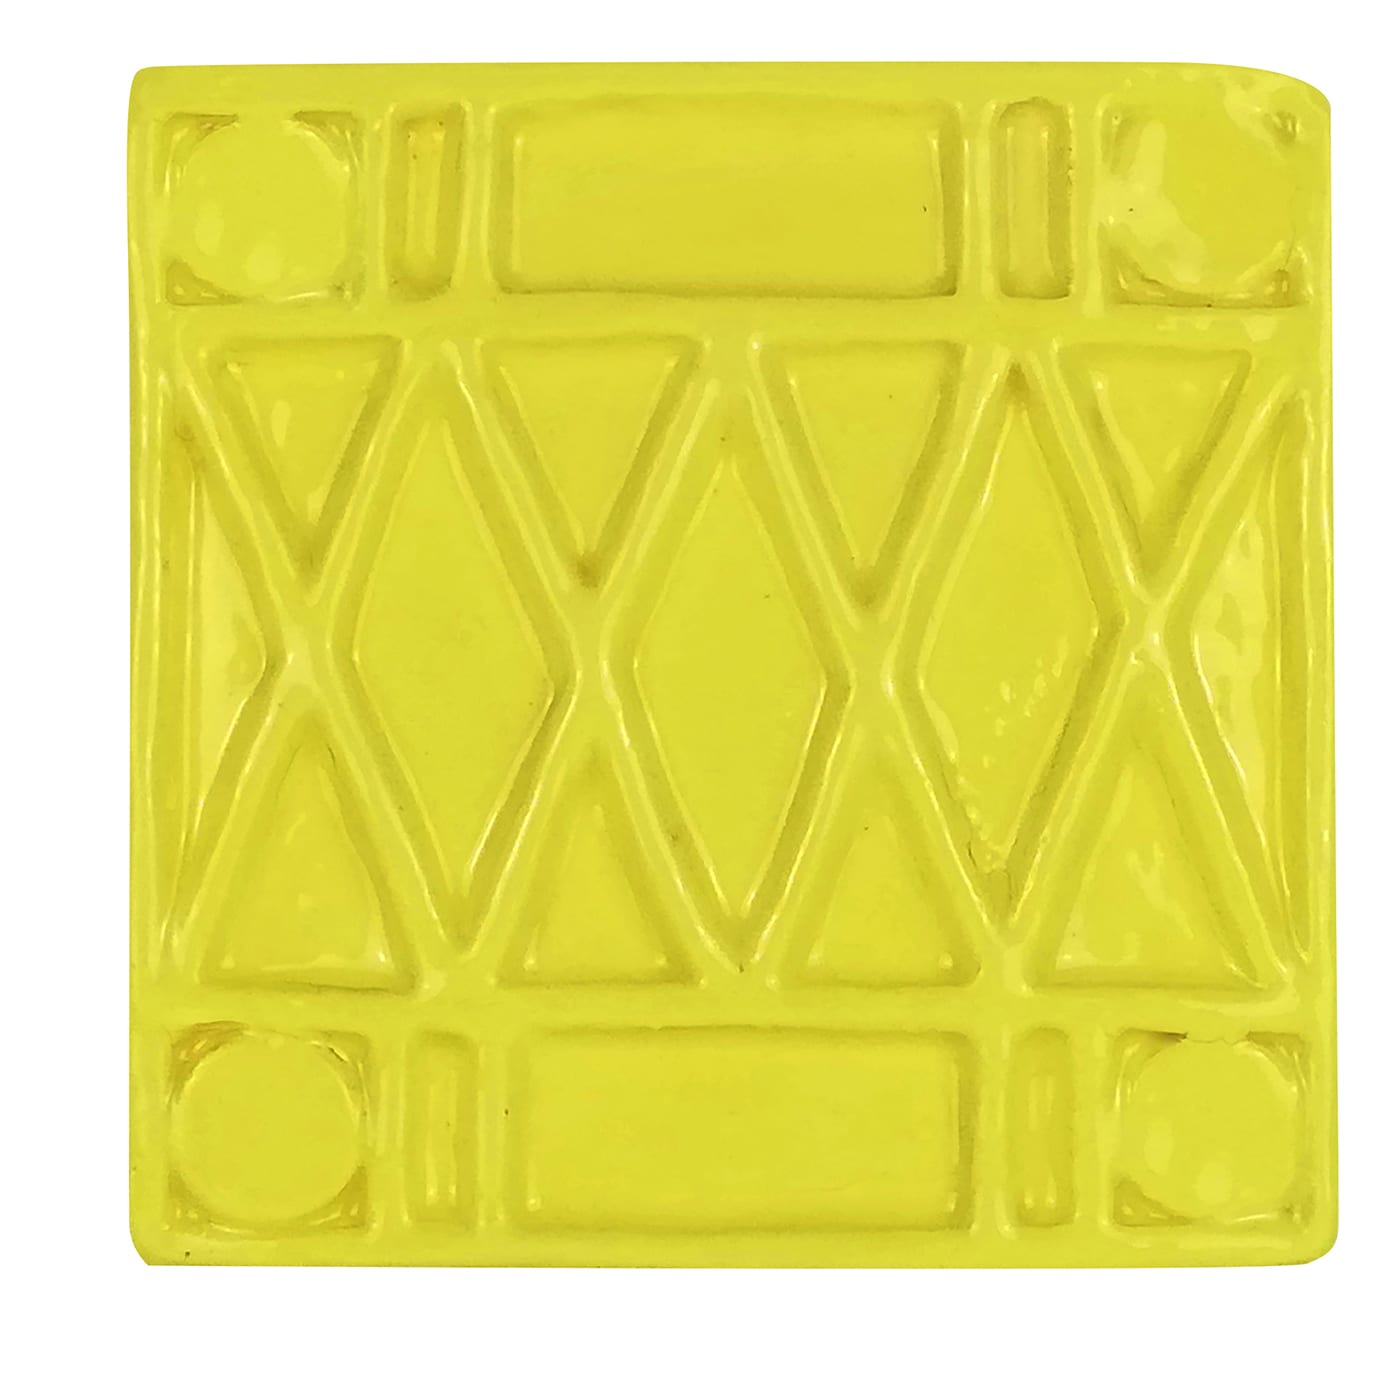 Cofana Square Yellow Charger Plate - Manifatture Pascoski